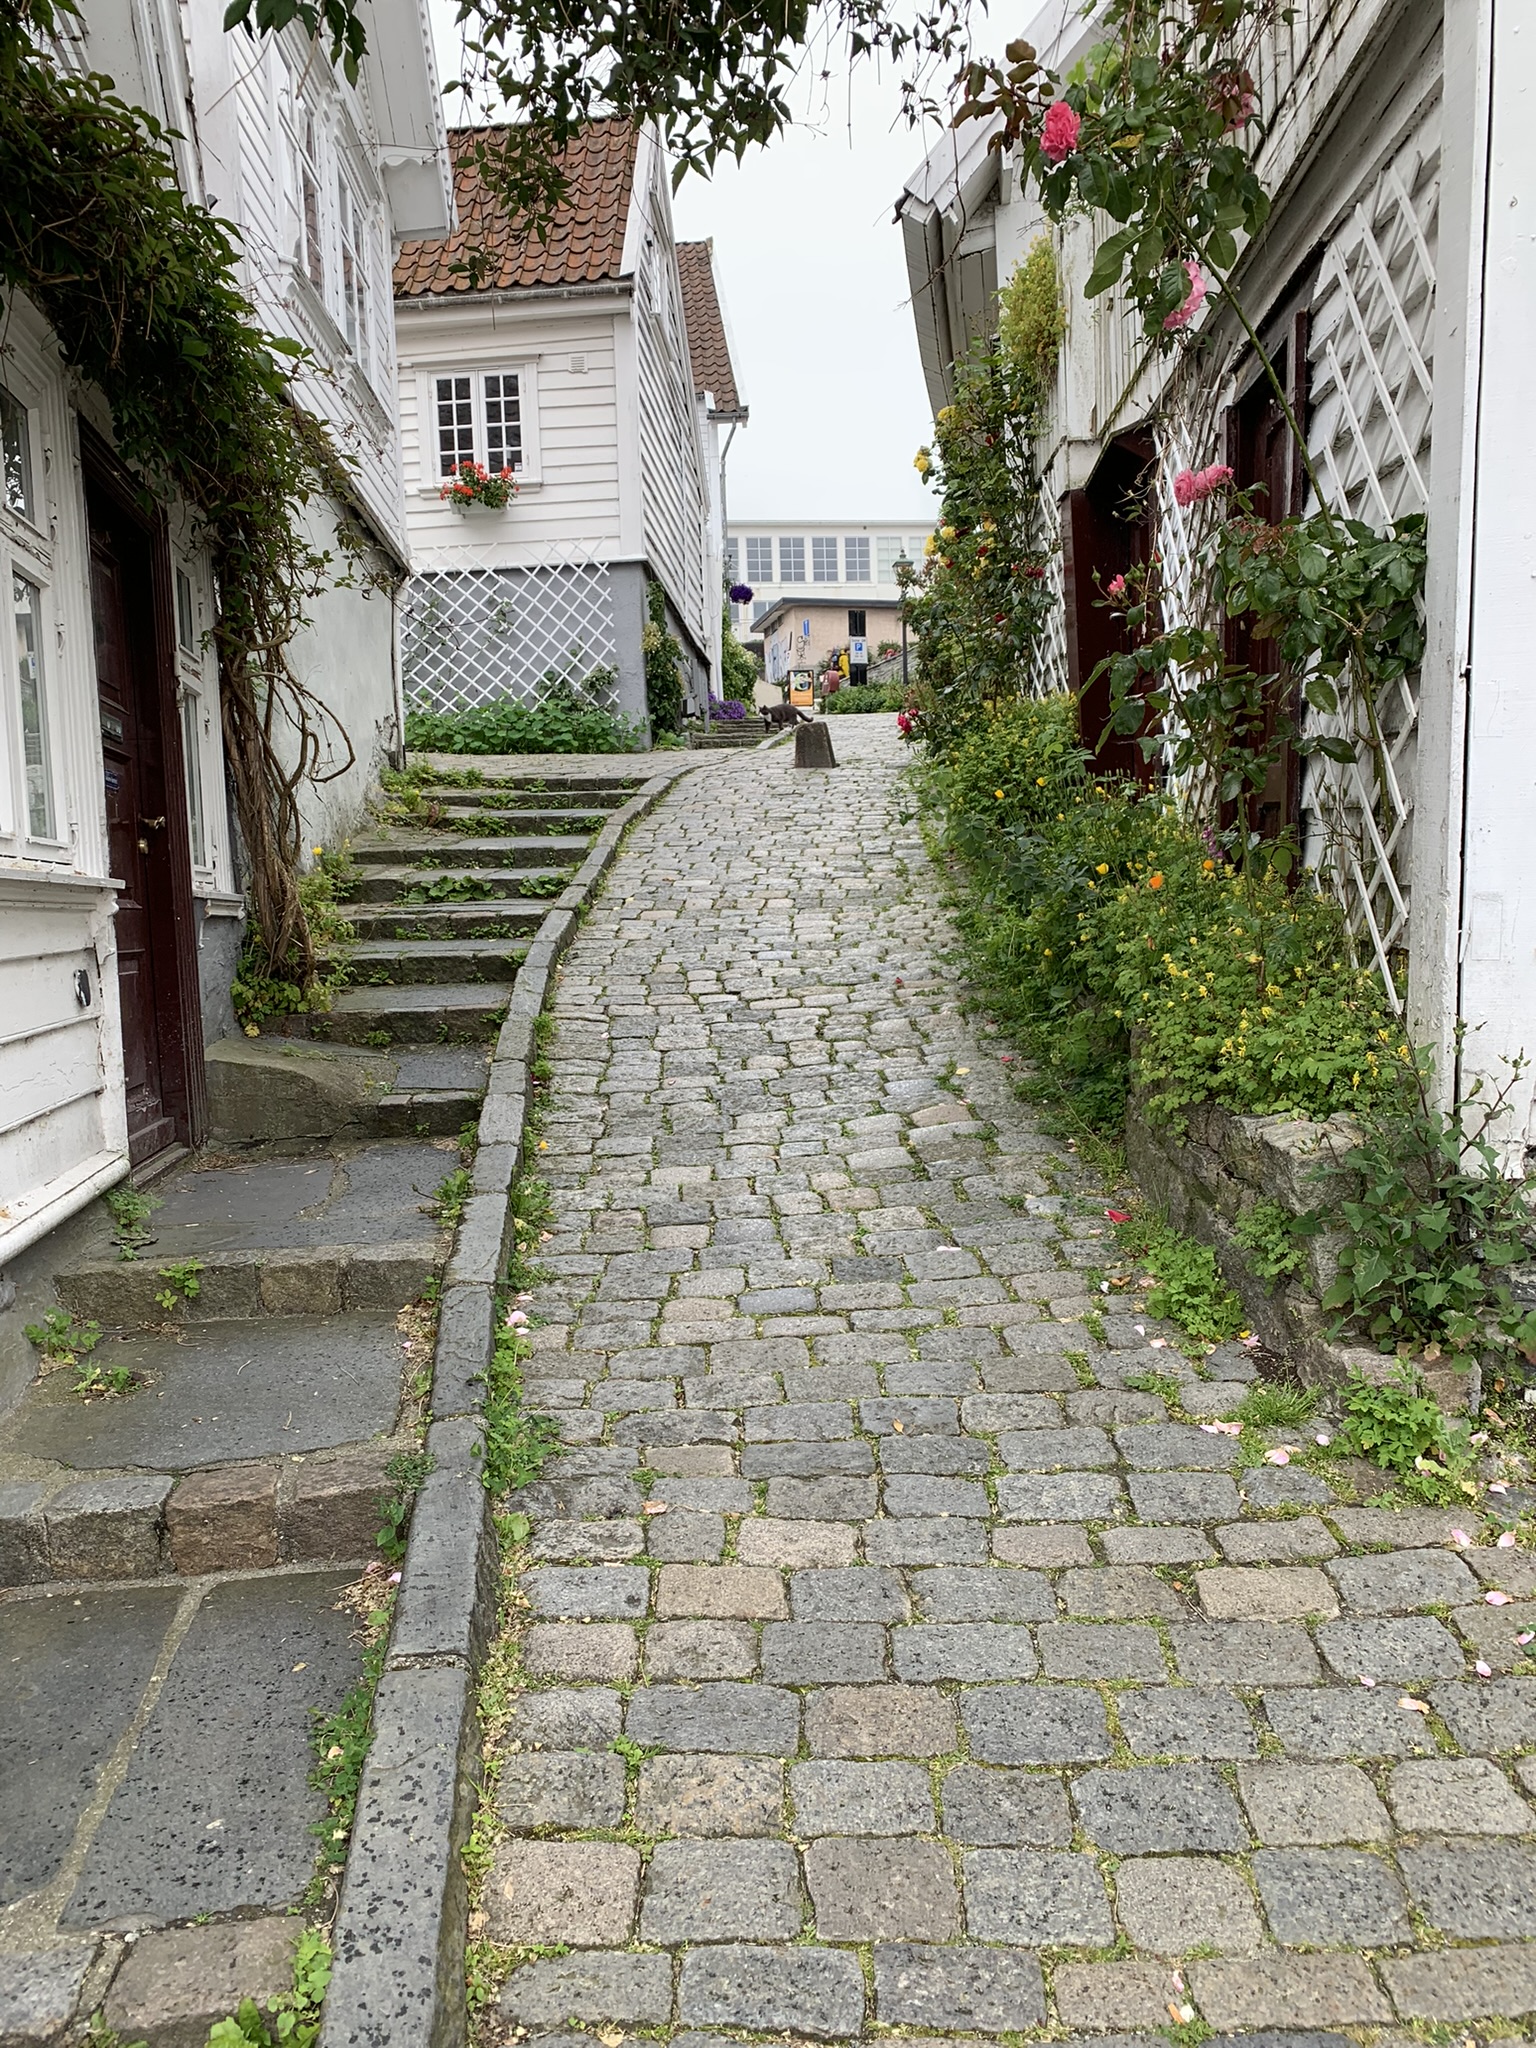 Noorwegen Gamle Stavanger straatje met trap